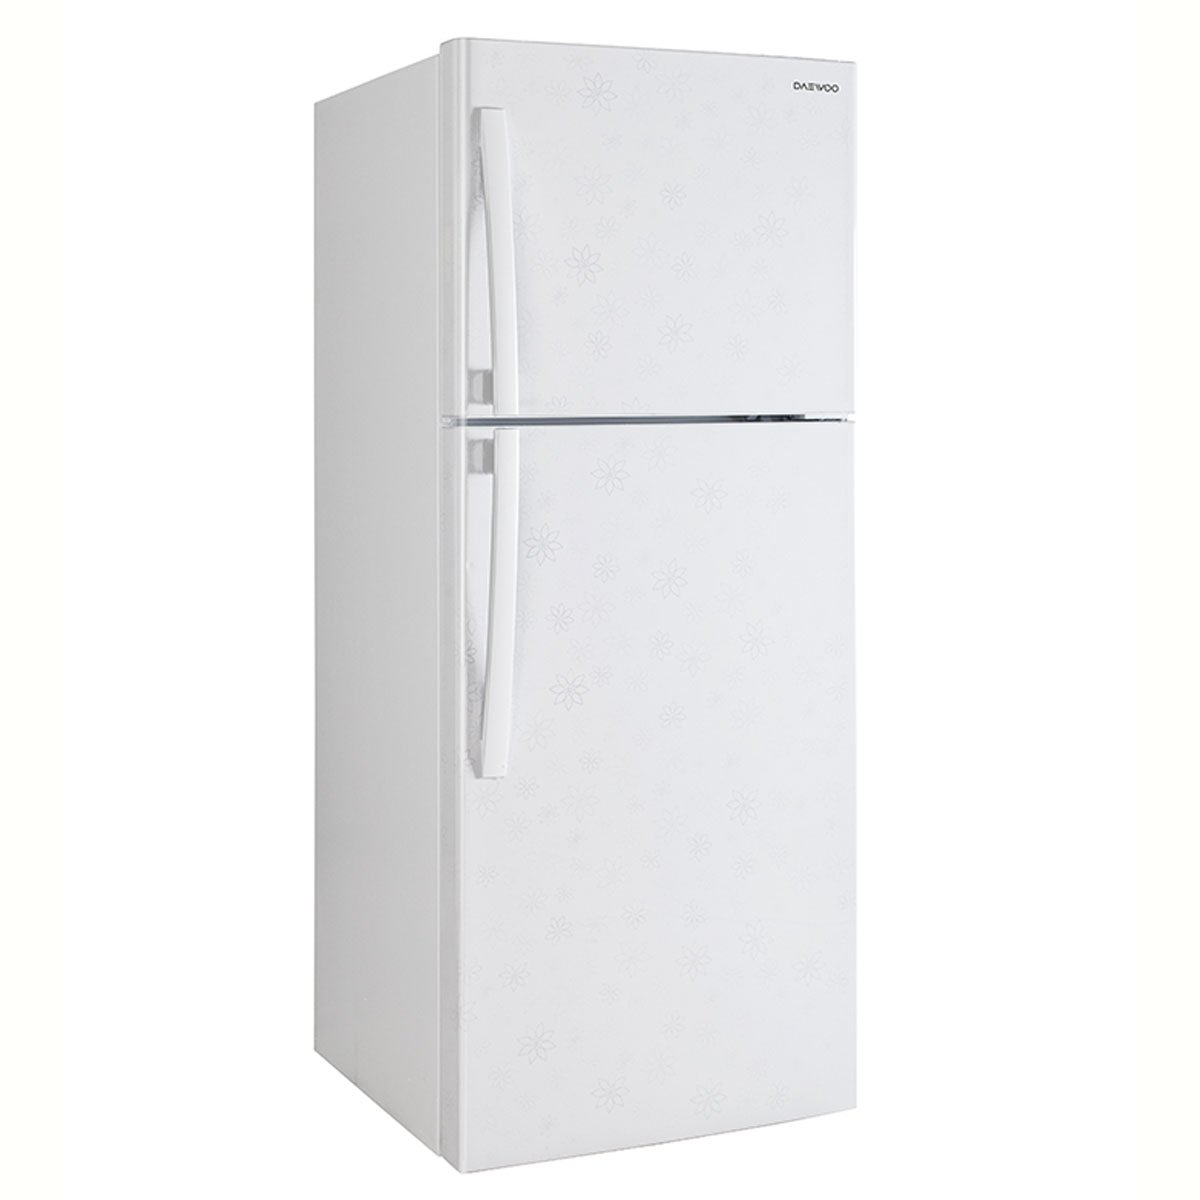 Refrigerador Daewoo Top Mount 16 Pies Blanco con Grabado Floral